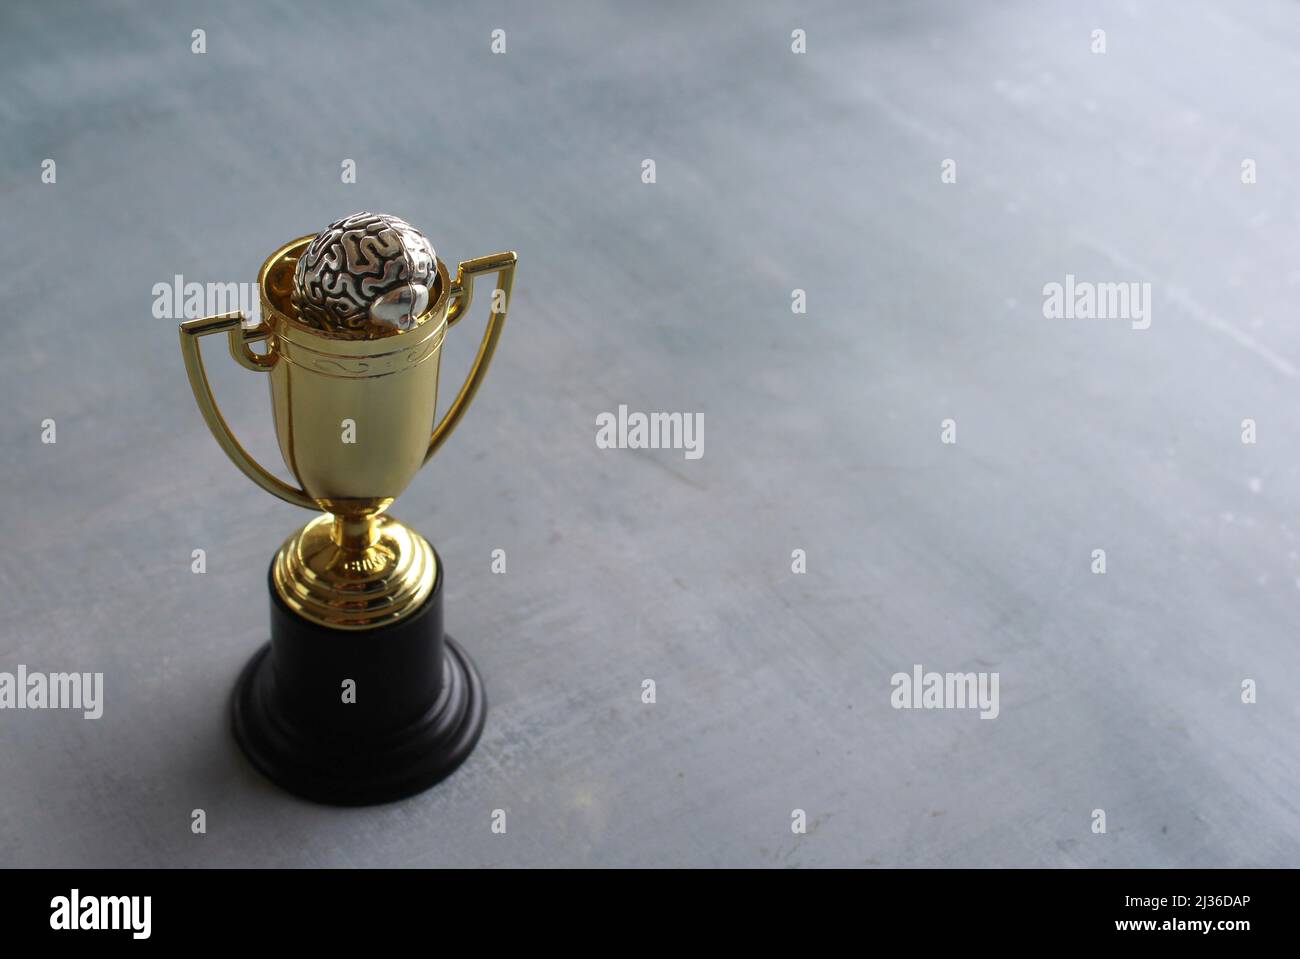 Gehirn in Gold Cup Trophäe mit Copy Space. Gewinnende Mentalität und Denkweise. Stockfoto